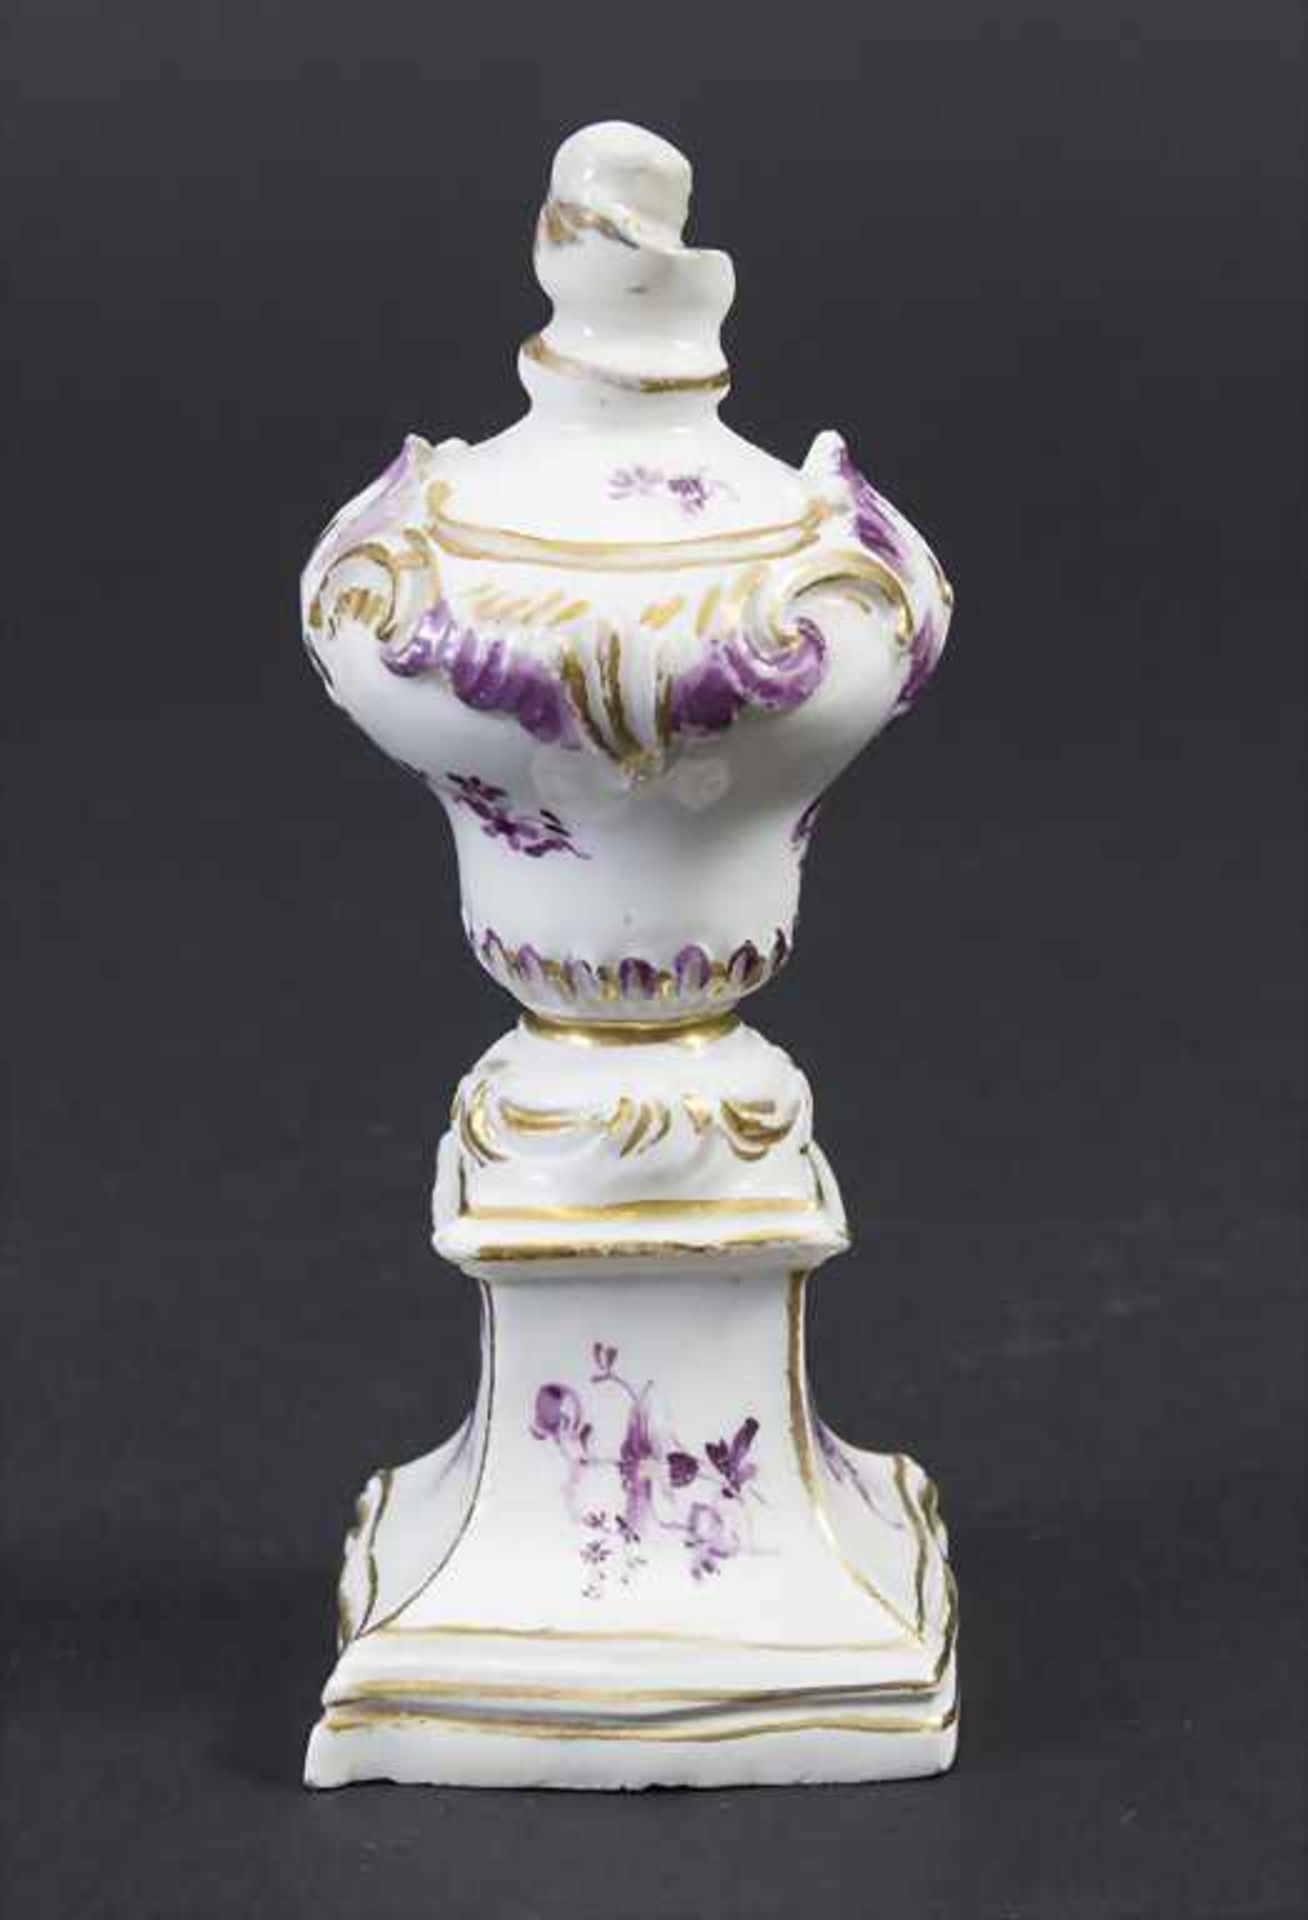 Kleine Tischdekoration / Ziervase / A small decorative vase, Höchst, um 1760